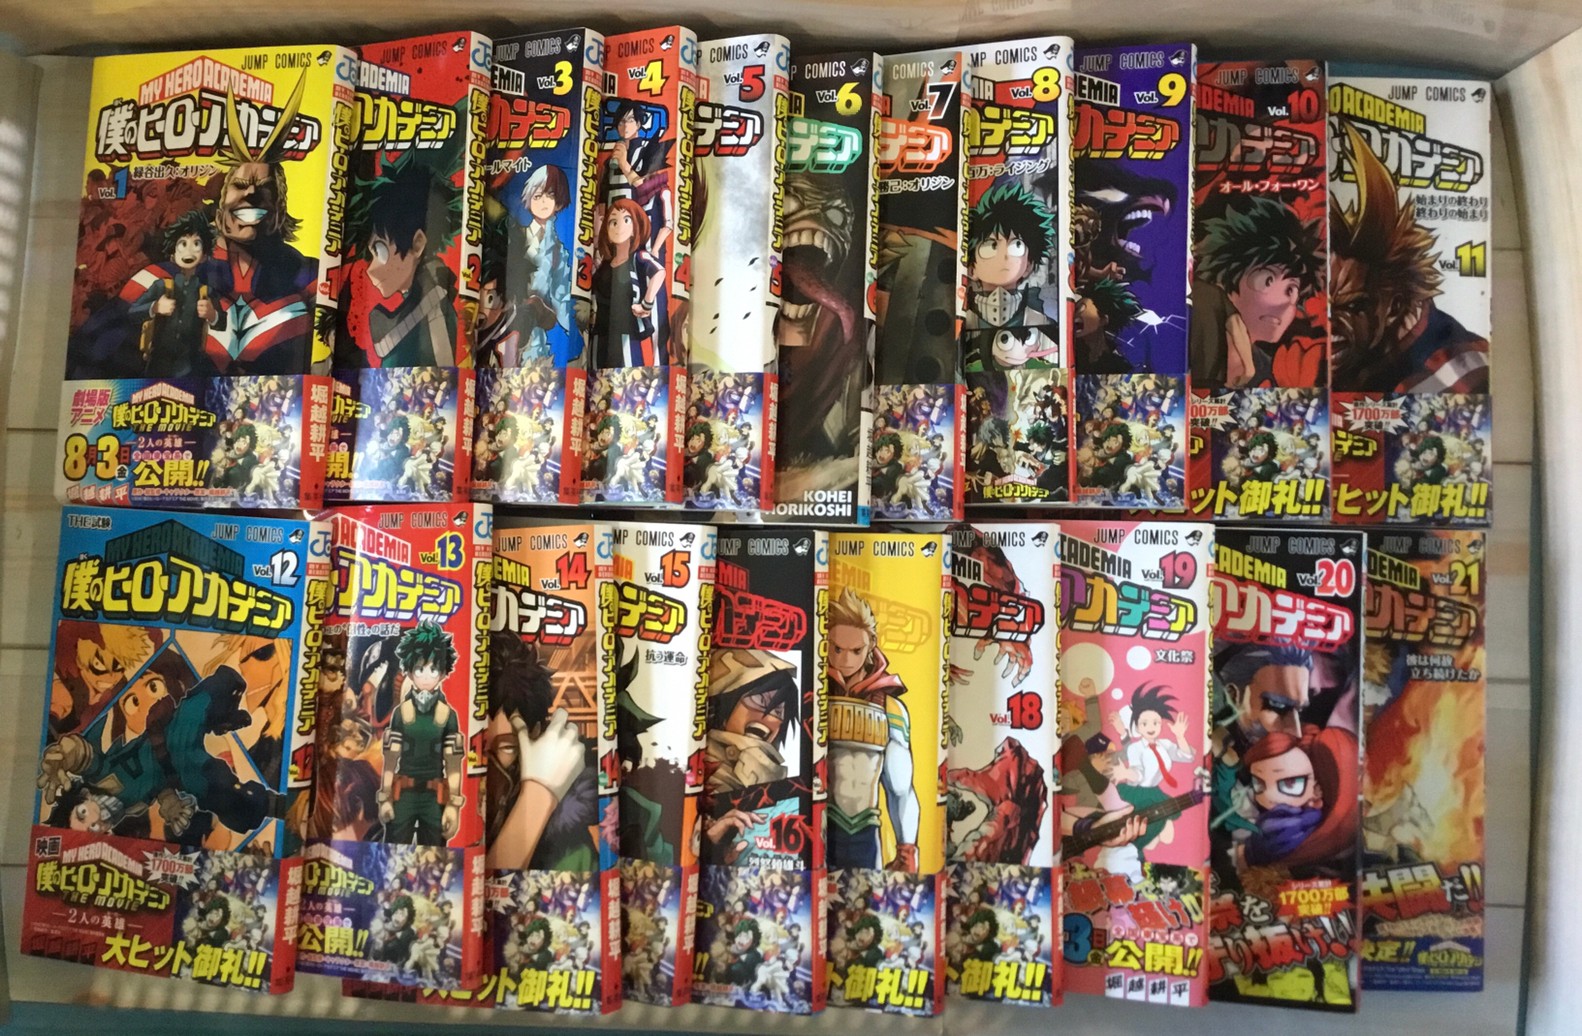 10 2 僕のヒーローアカデミア 1 21巻 Shaman King The Super Star 1 4巻 東京喰種 Re 全16巻 お持ち頂きました 売るのも買うのもマンガ倉庫山口店